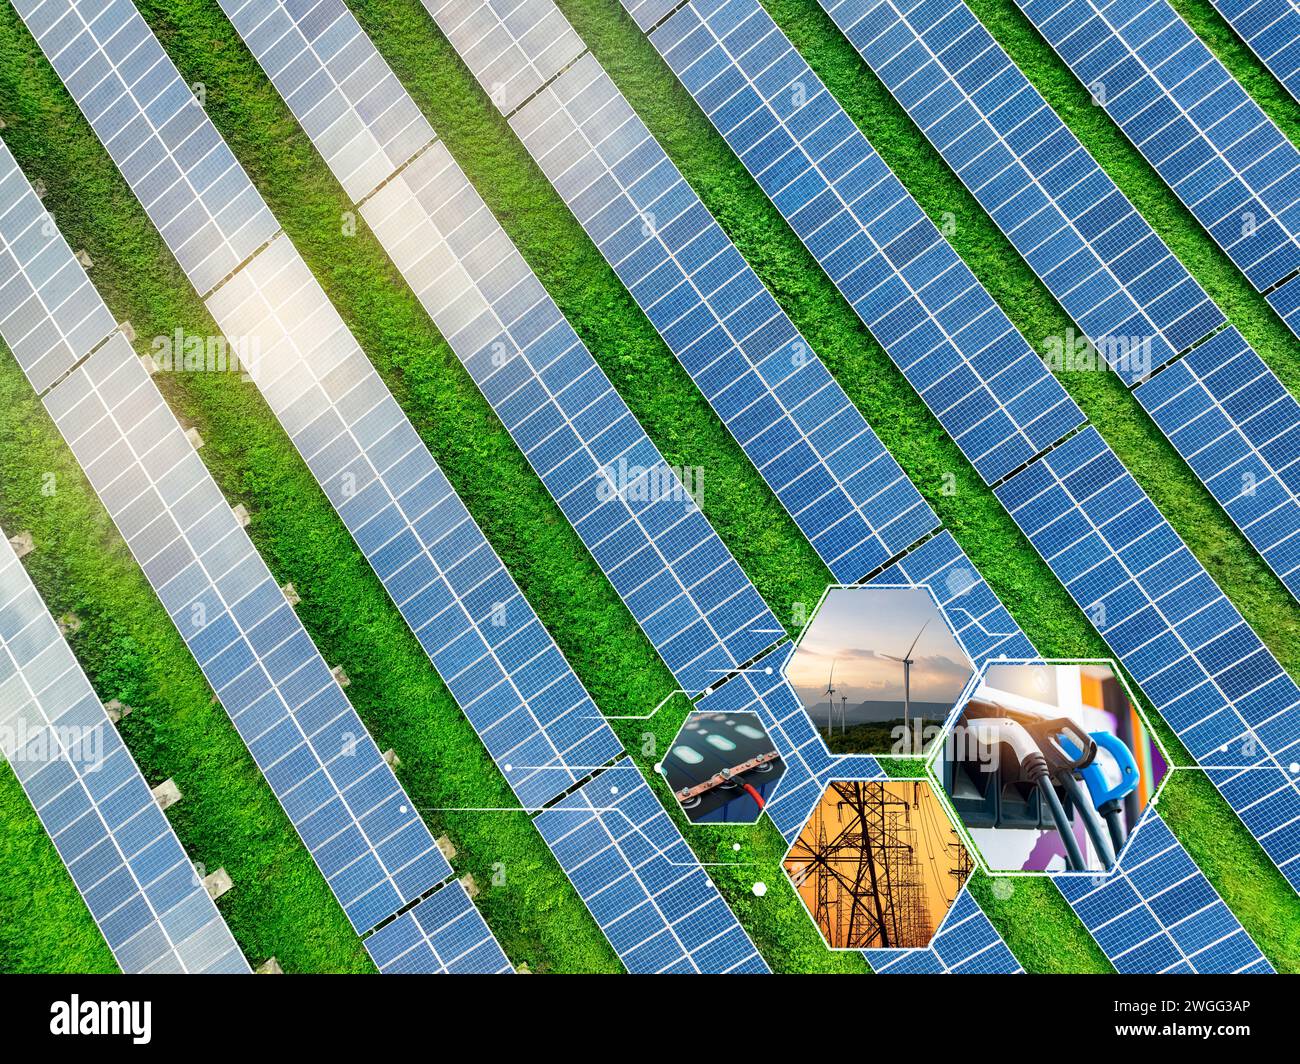 Concetto di energia sostenibile. Energia solare, energia eolica, batteria agli ioni di litio, fonte di energia elettrica alternativa e stazione di ricarica ev. Energia rinnovabile. Foto Stock